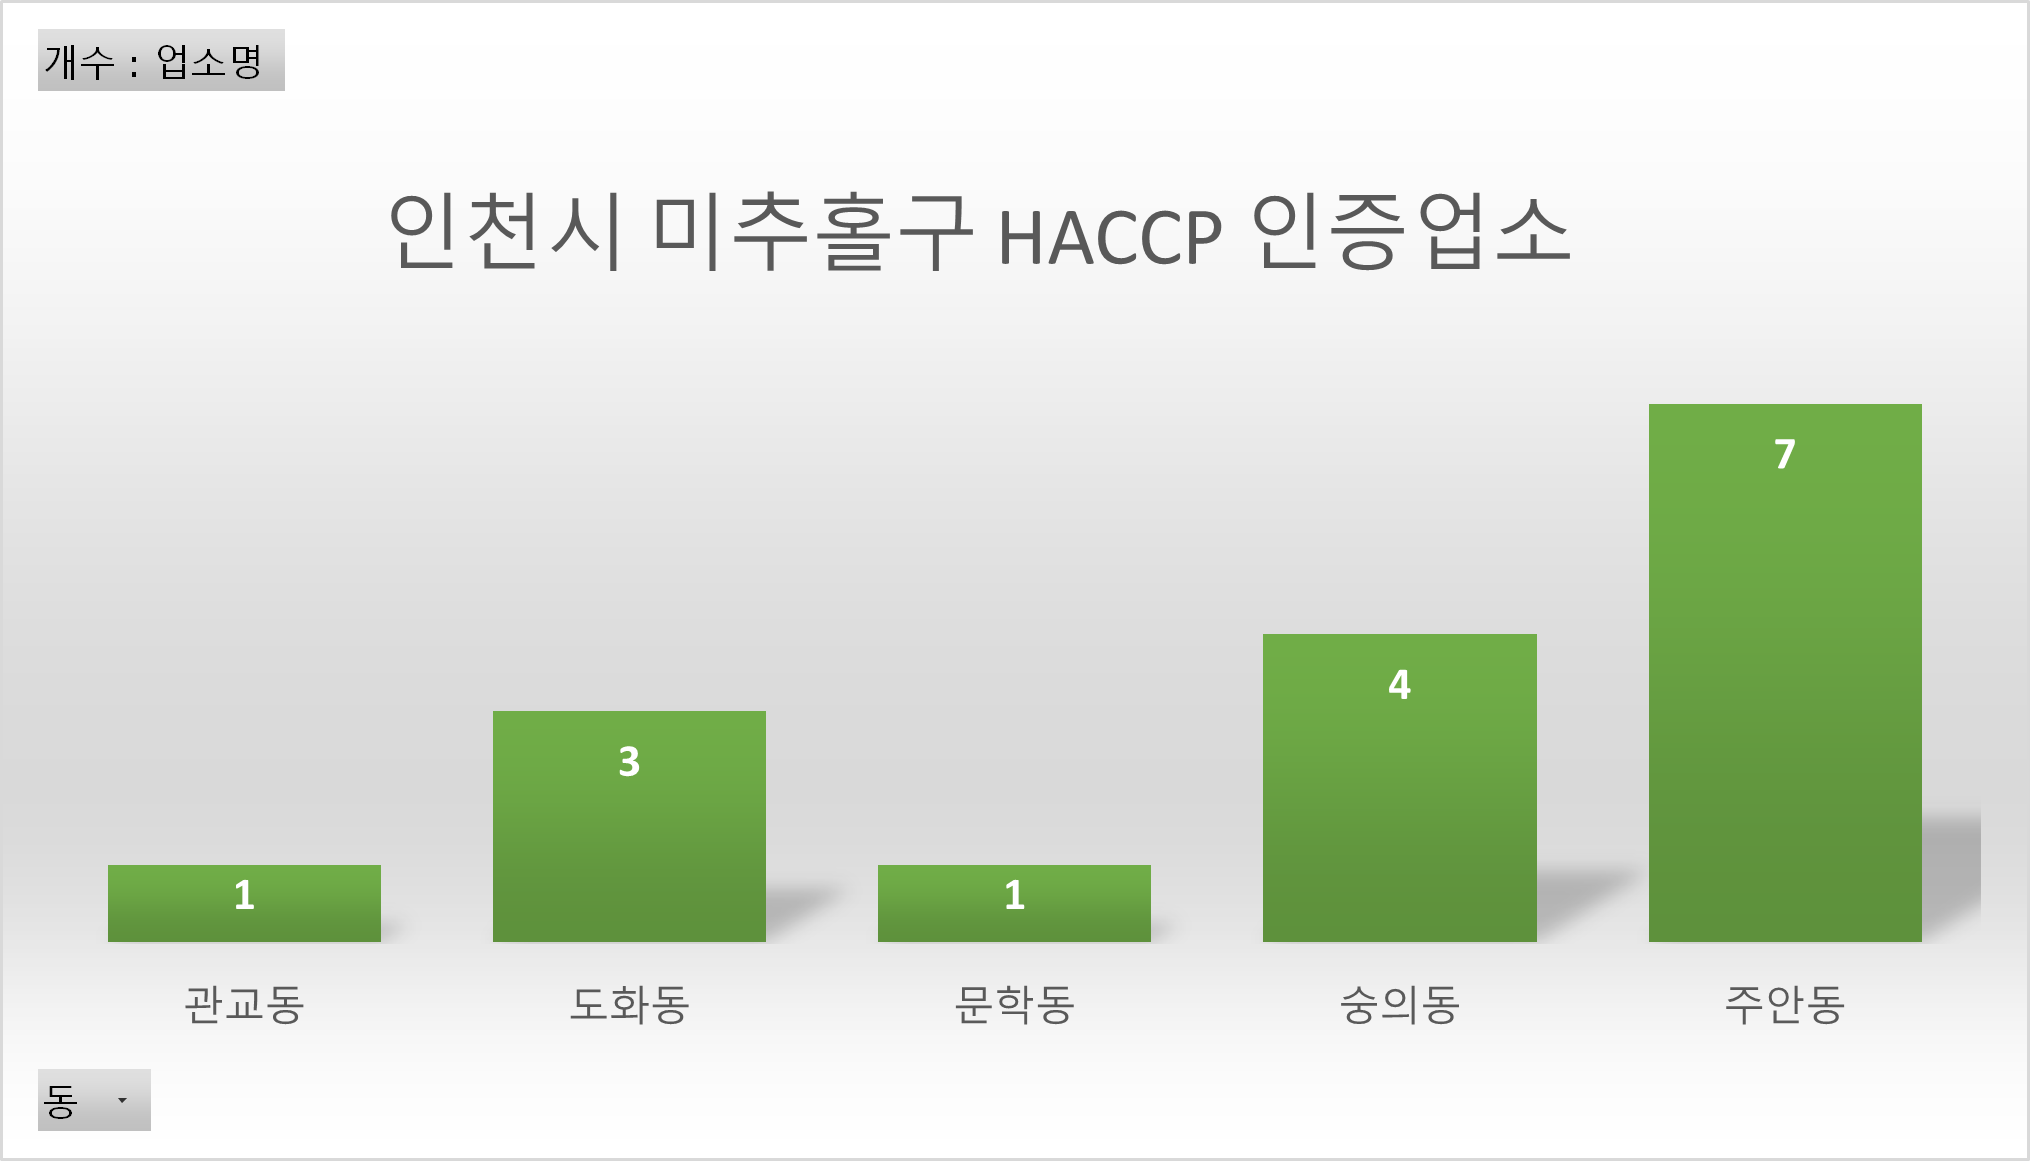 인천시 미추홀구 HACCP 인증업소 그래프입니다